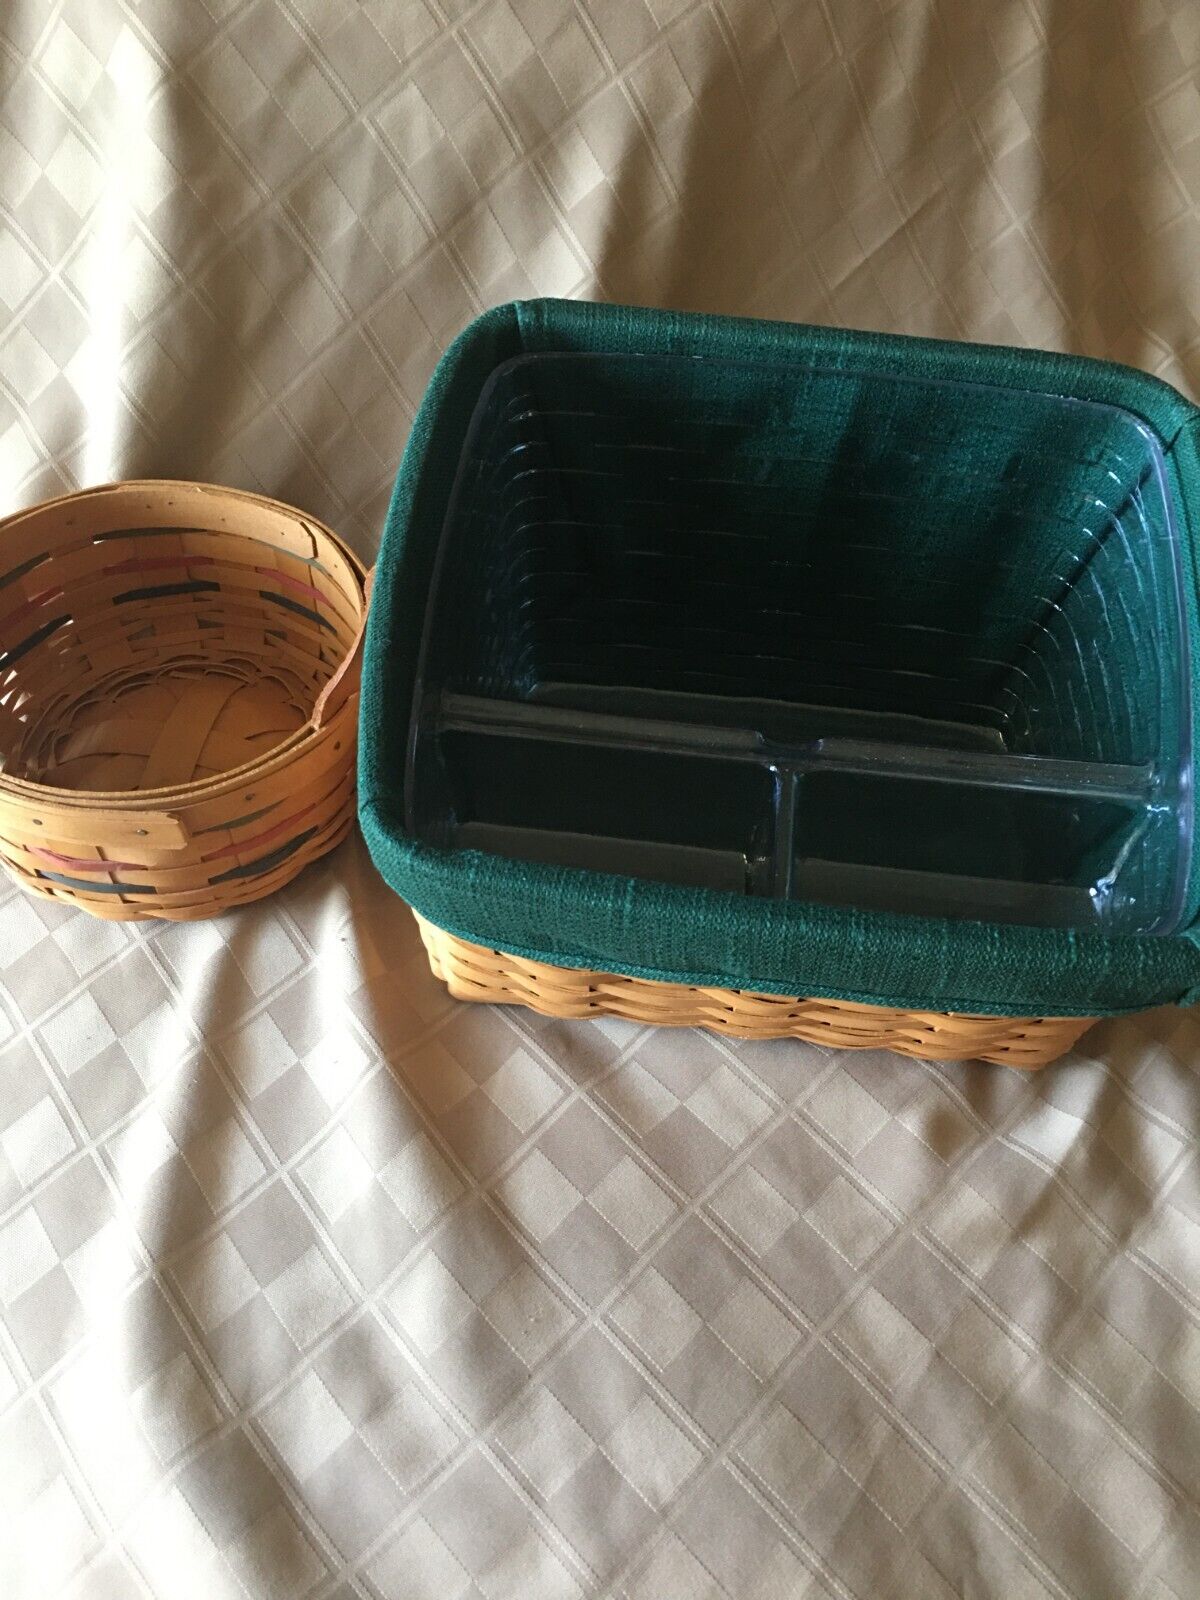 2 Longaberger vintage Baskets; Sewing Basket+Button basket w/leather handles